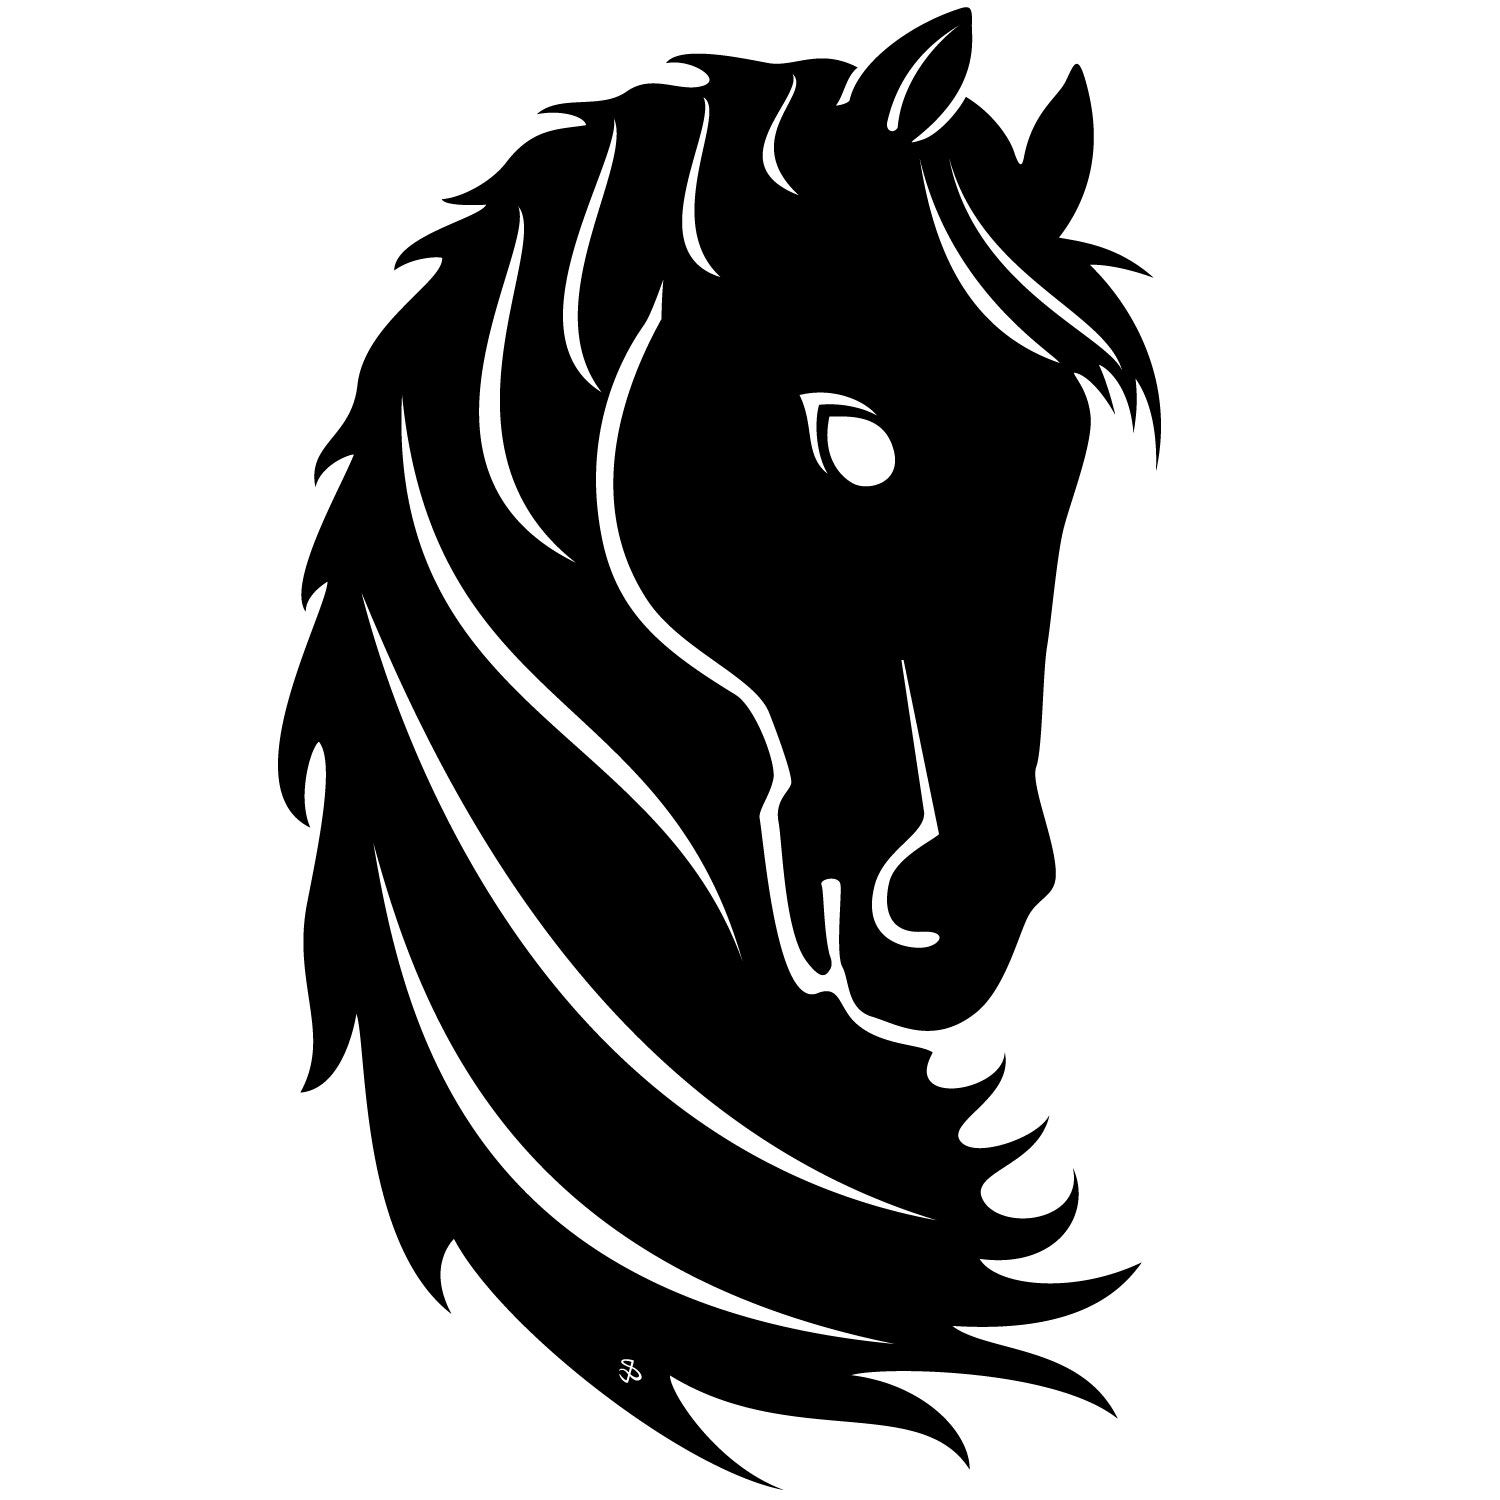 Horses Free Vectors | Free vector images, graphics and art - CC ...